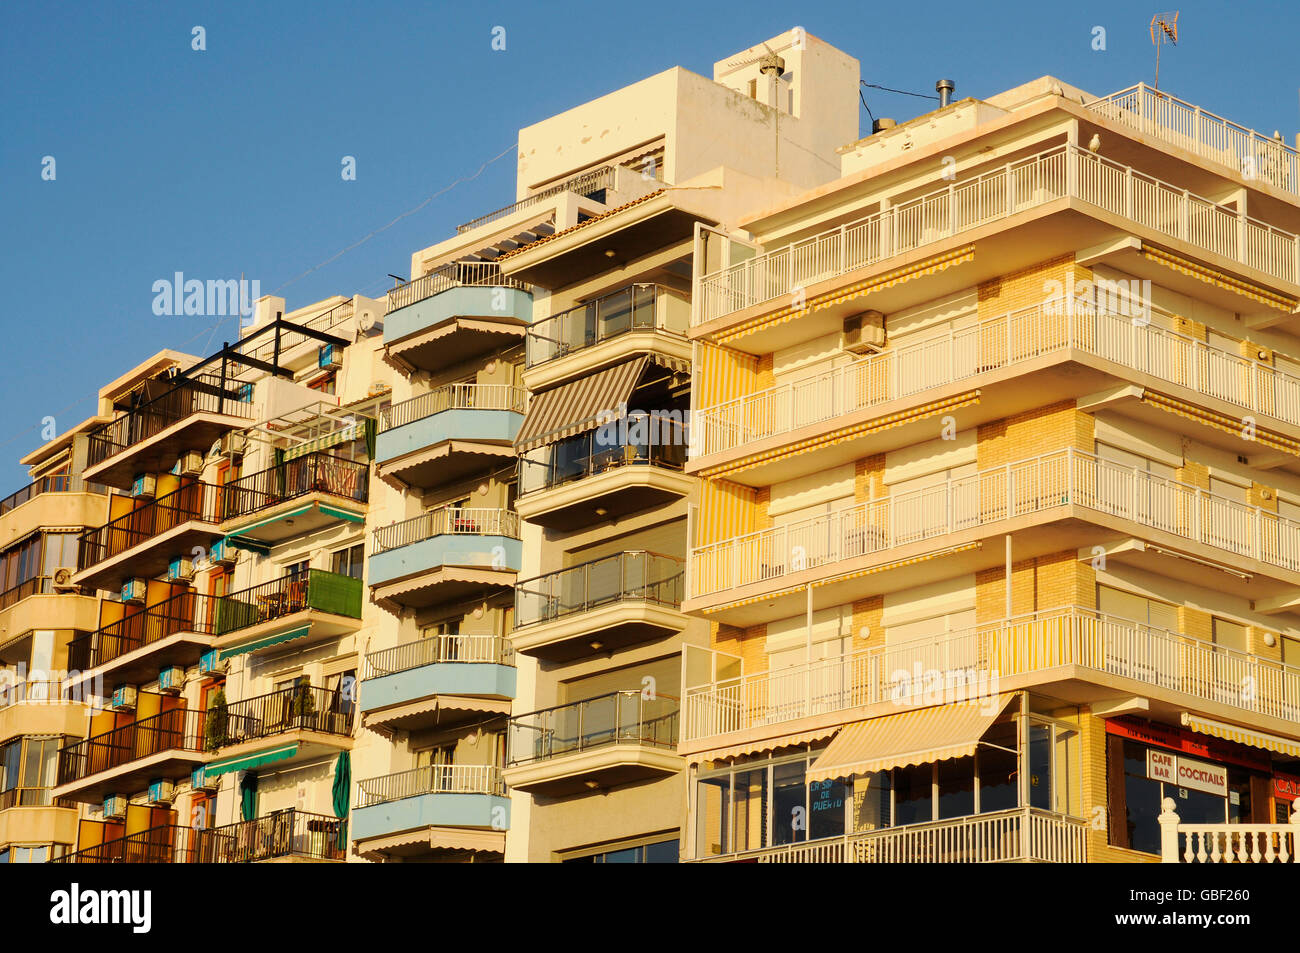 Casa de fachadas, edificios de gran altura, luz del atardecer, Benidorm, Costa Blanca, en la provincia de Alicante, España, Europa Foto de stock